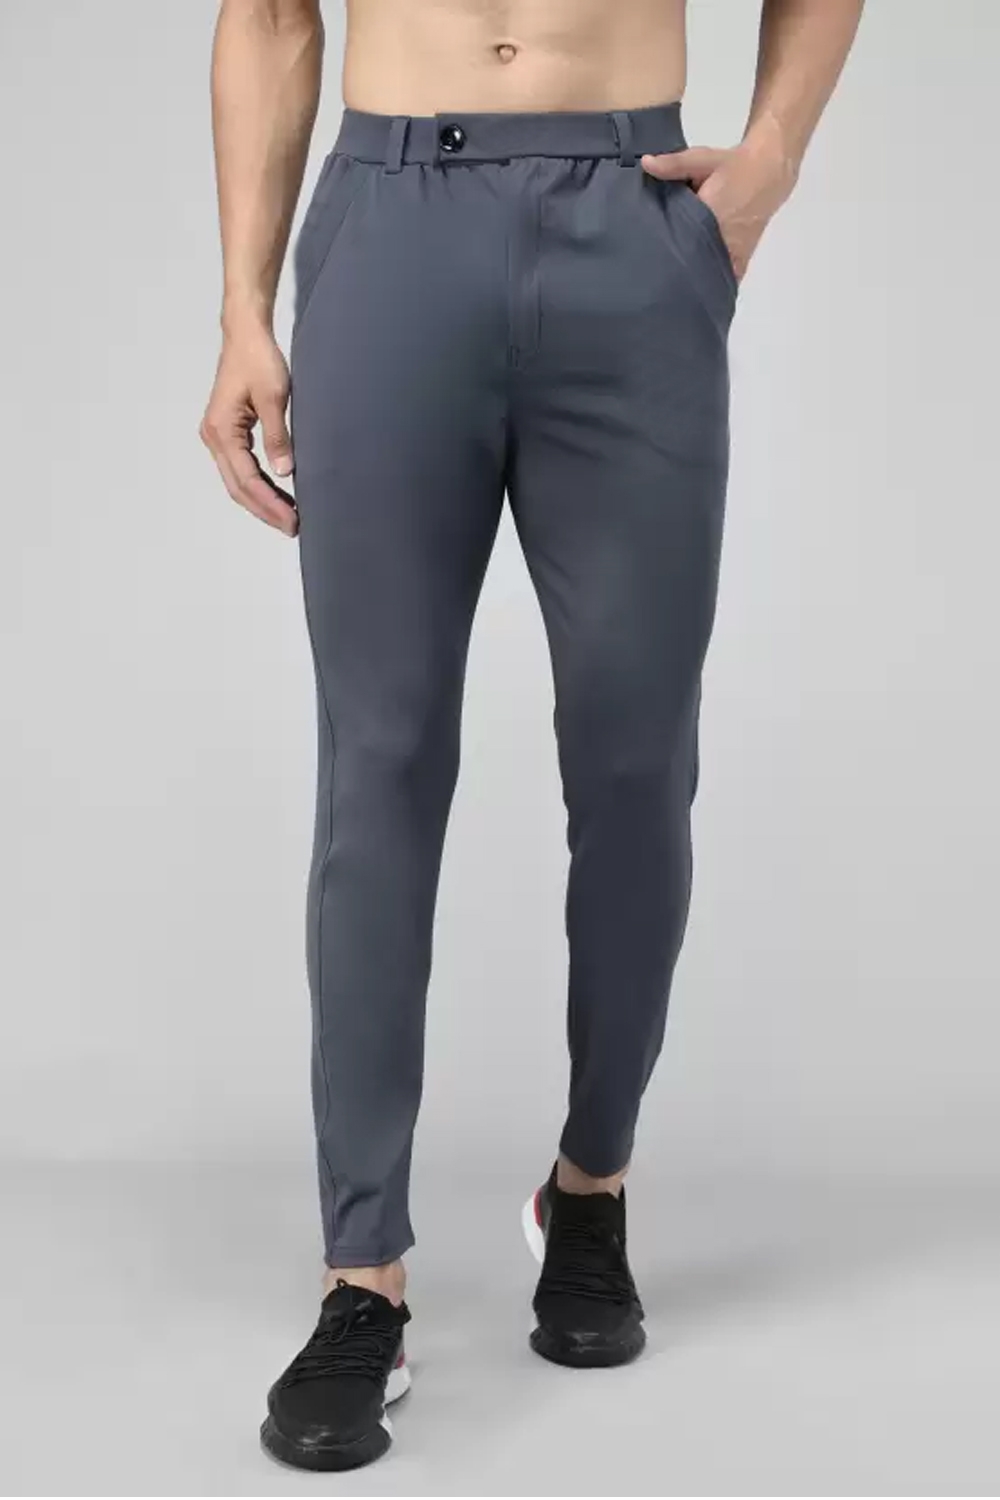 HEATHEX Men's Lycra Trouser Pants Dark Grey